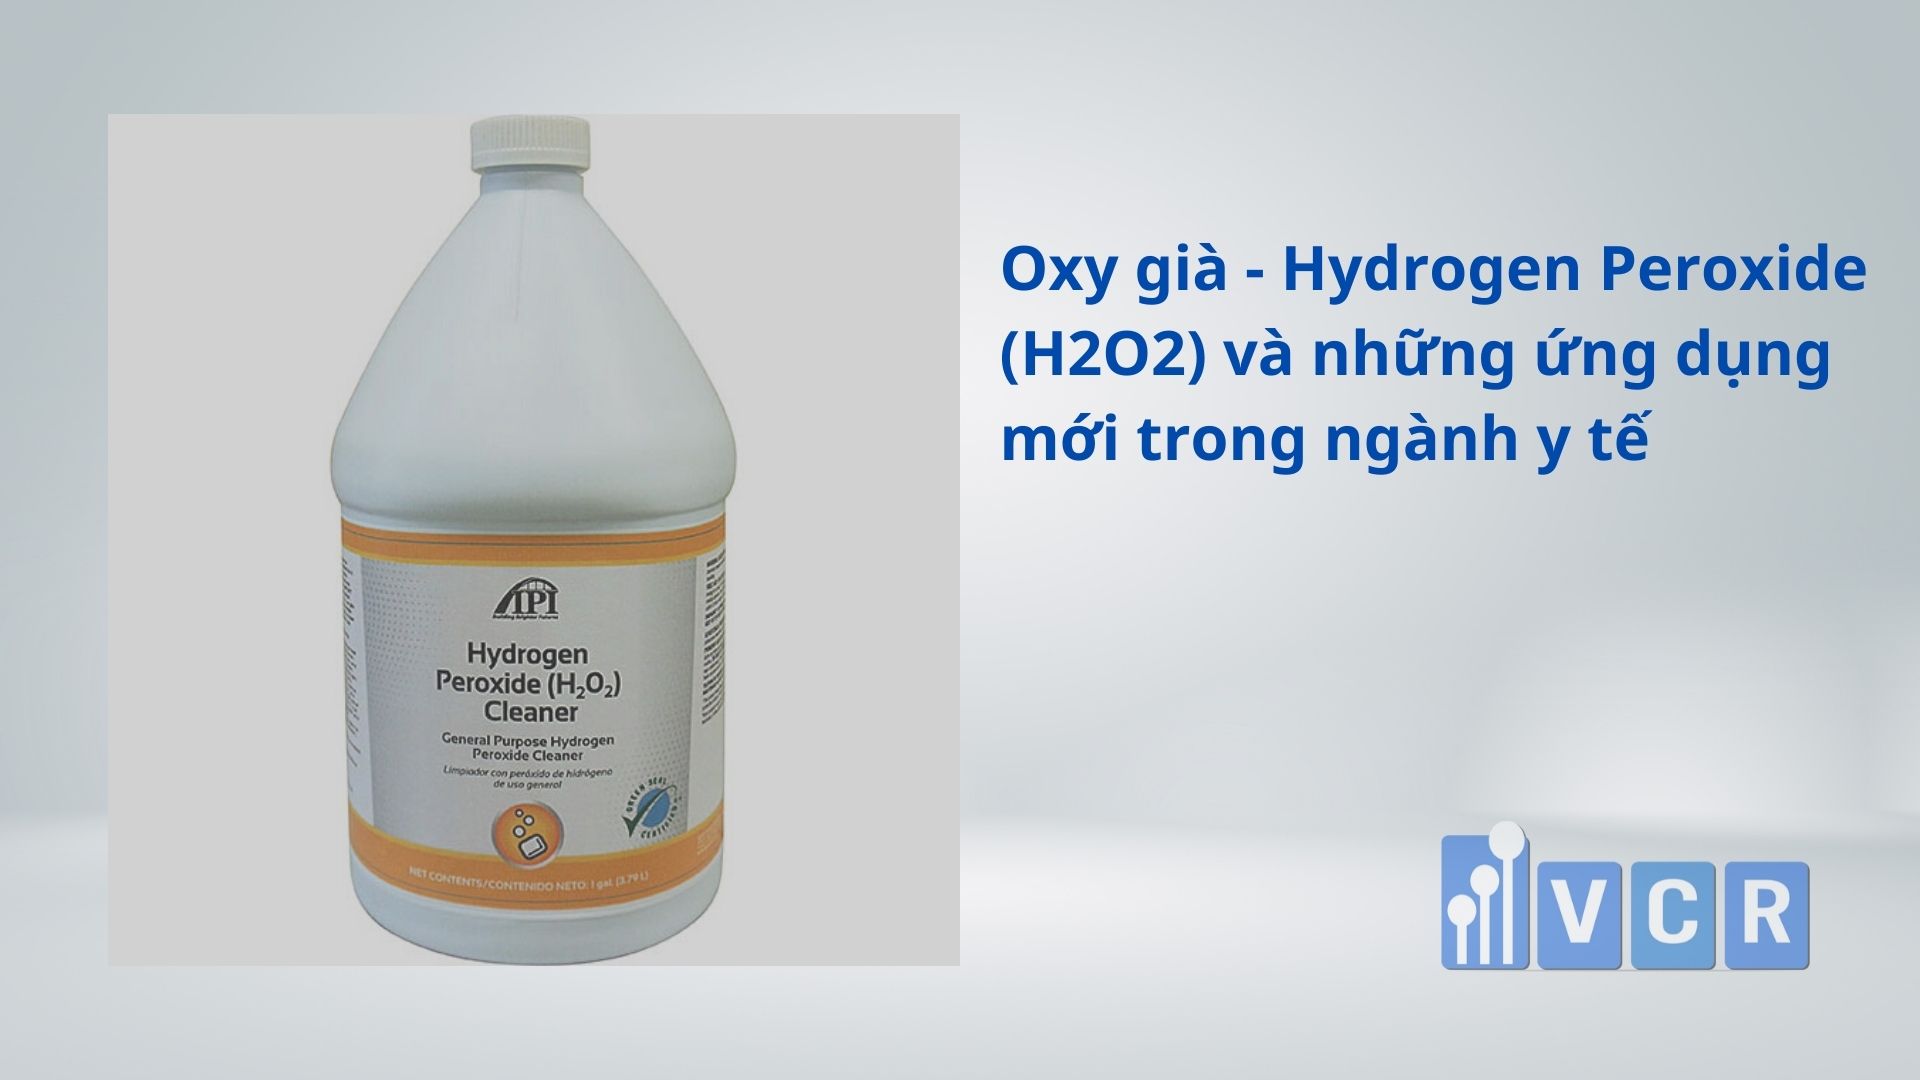 Oxy già – Hydrogen Peroxide (H2O2) và những ứng dụng mới trong ngành y tế